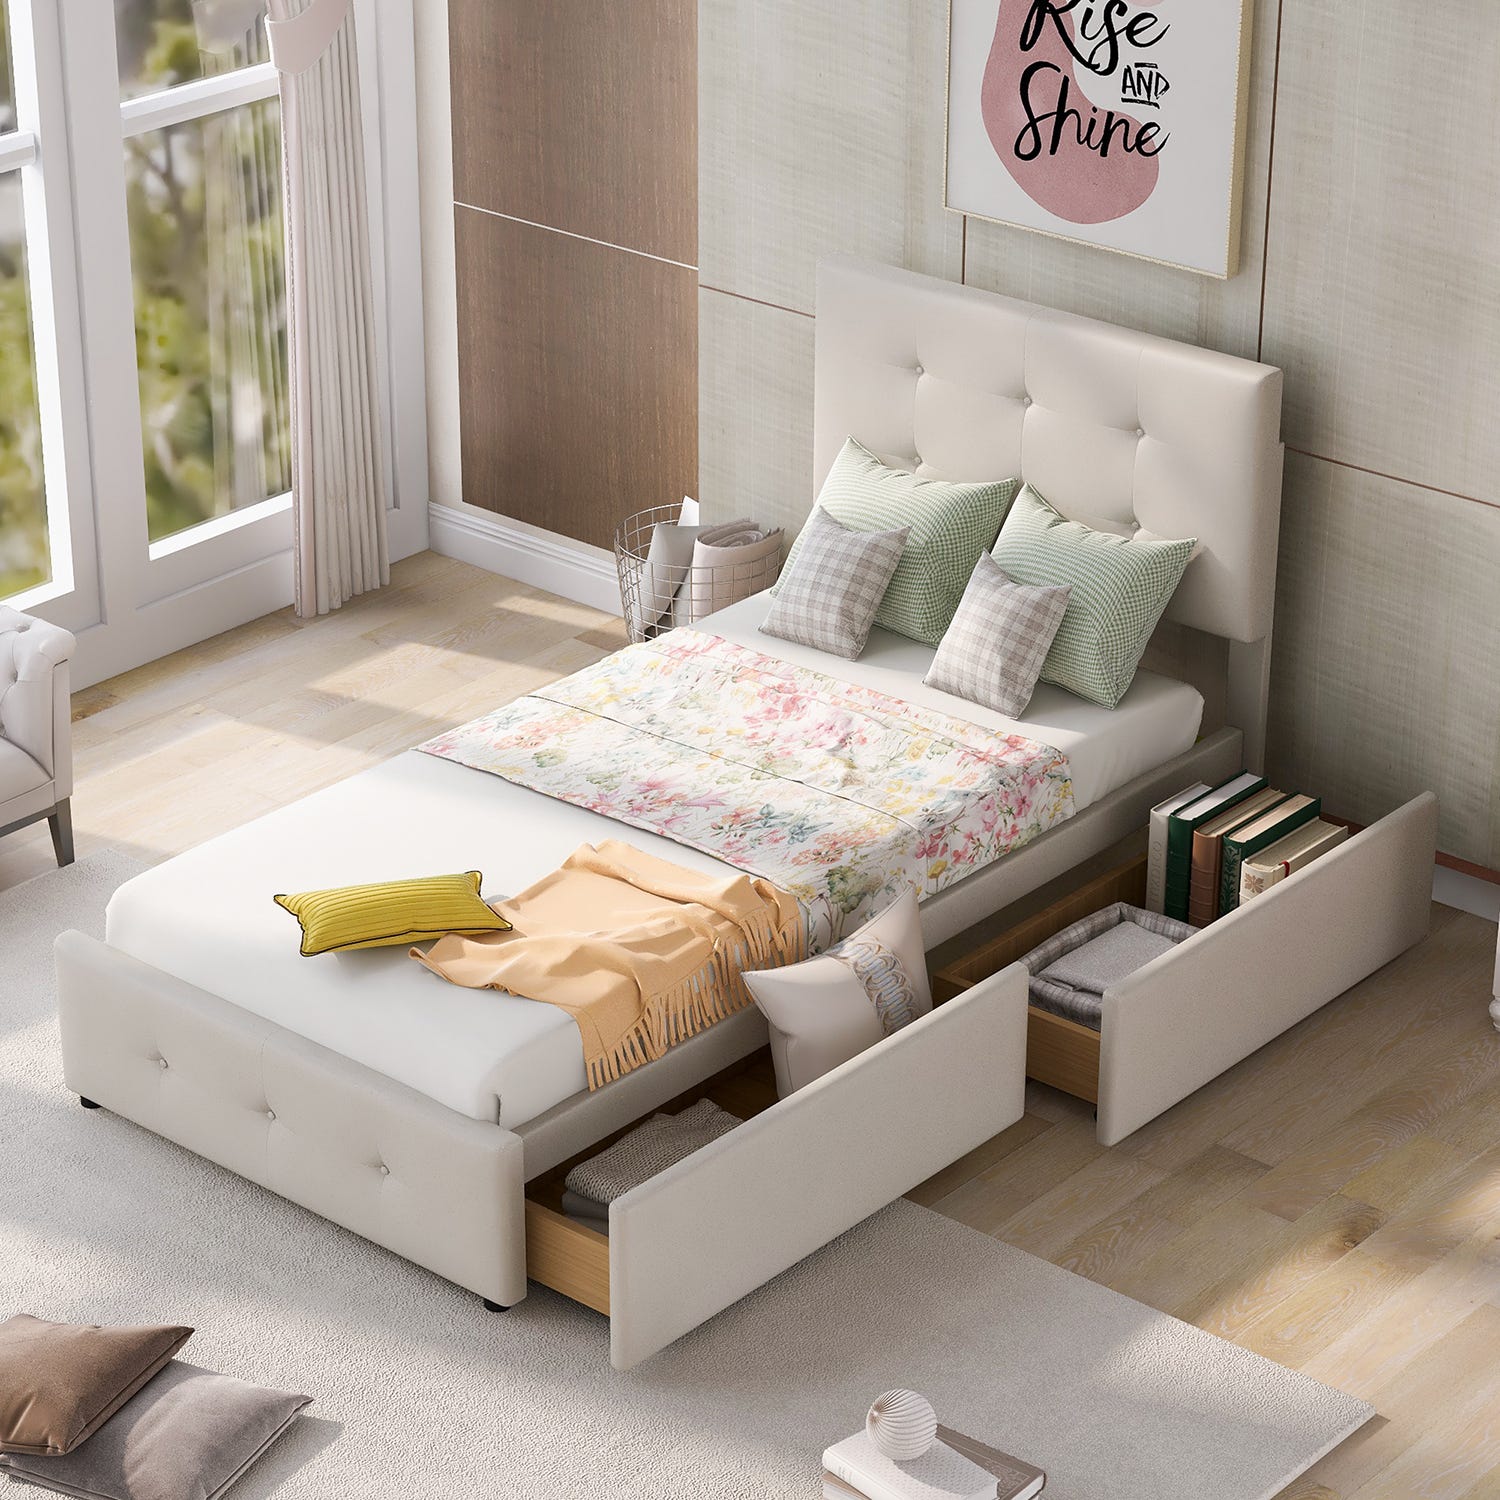 Sweiko - Cadre de lit Plateforme bois, lit adulte avec tête de lit